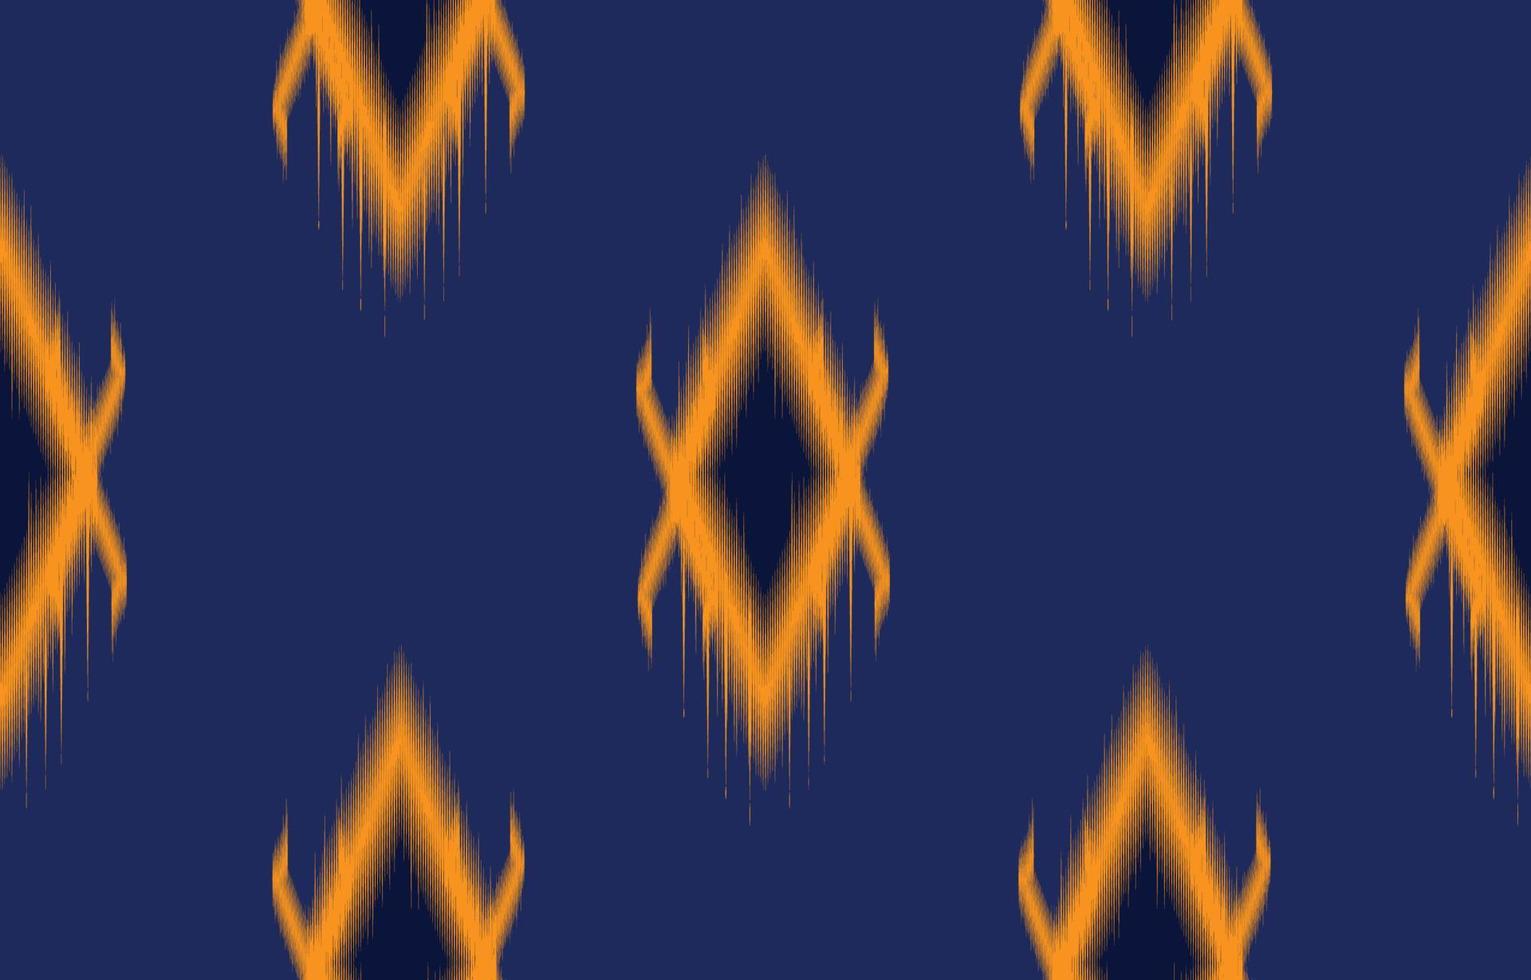 patrón ikat color azul y naranja, estilo de textura étnica tribal, diseño para imprimir en productos, fondo, bufanda, ropa, envoltura, tela, ilustración vectorial. vector